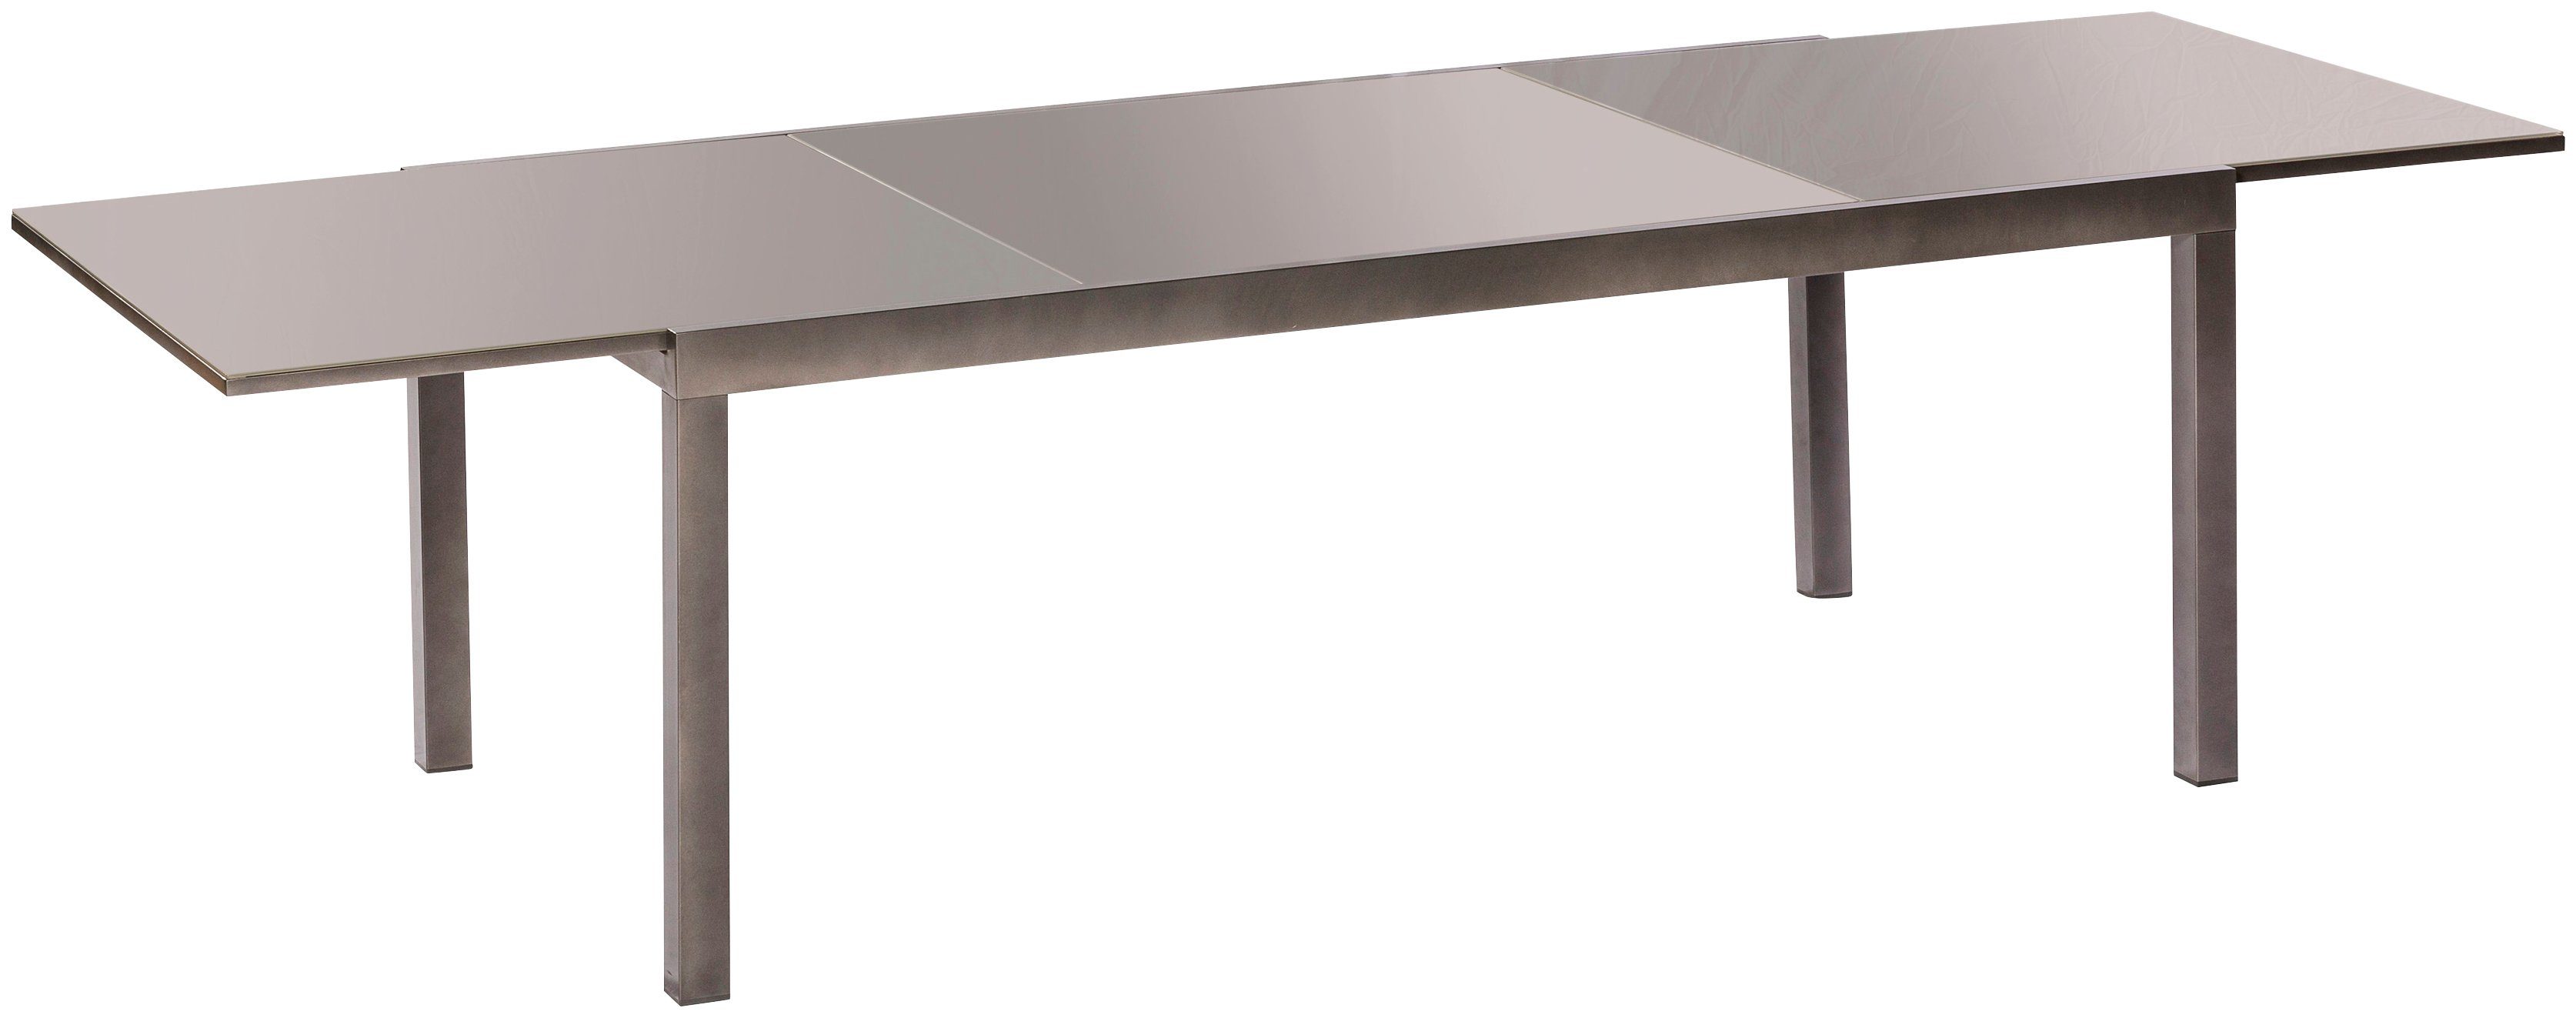 MERXX 110x220 cm Semi Gartentisch AZ-Tisch,